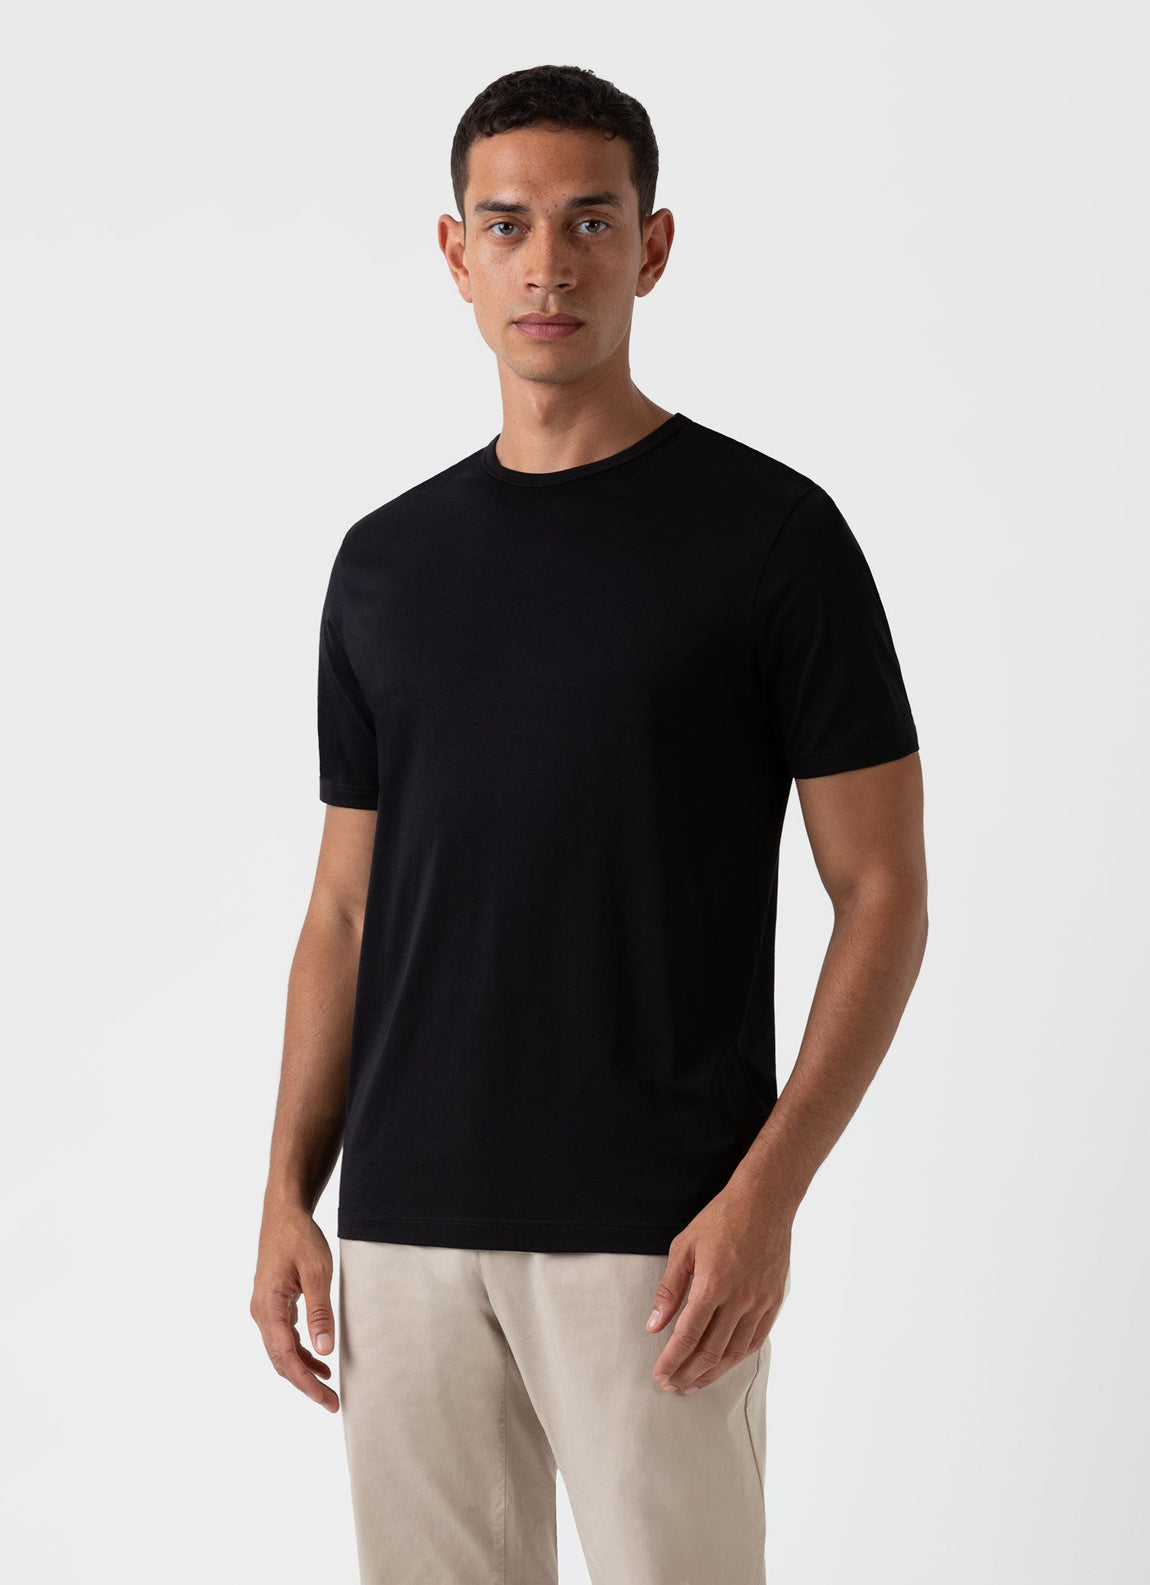 Men's what is black t-shirt